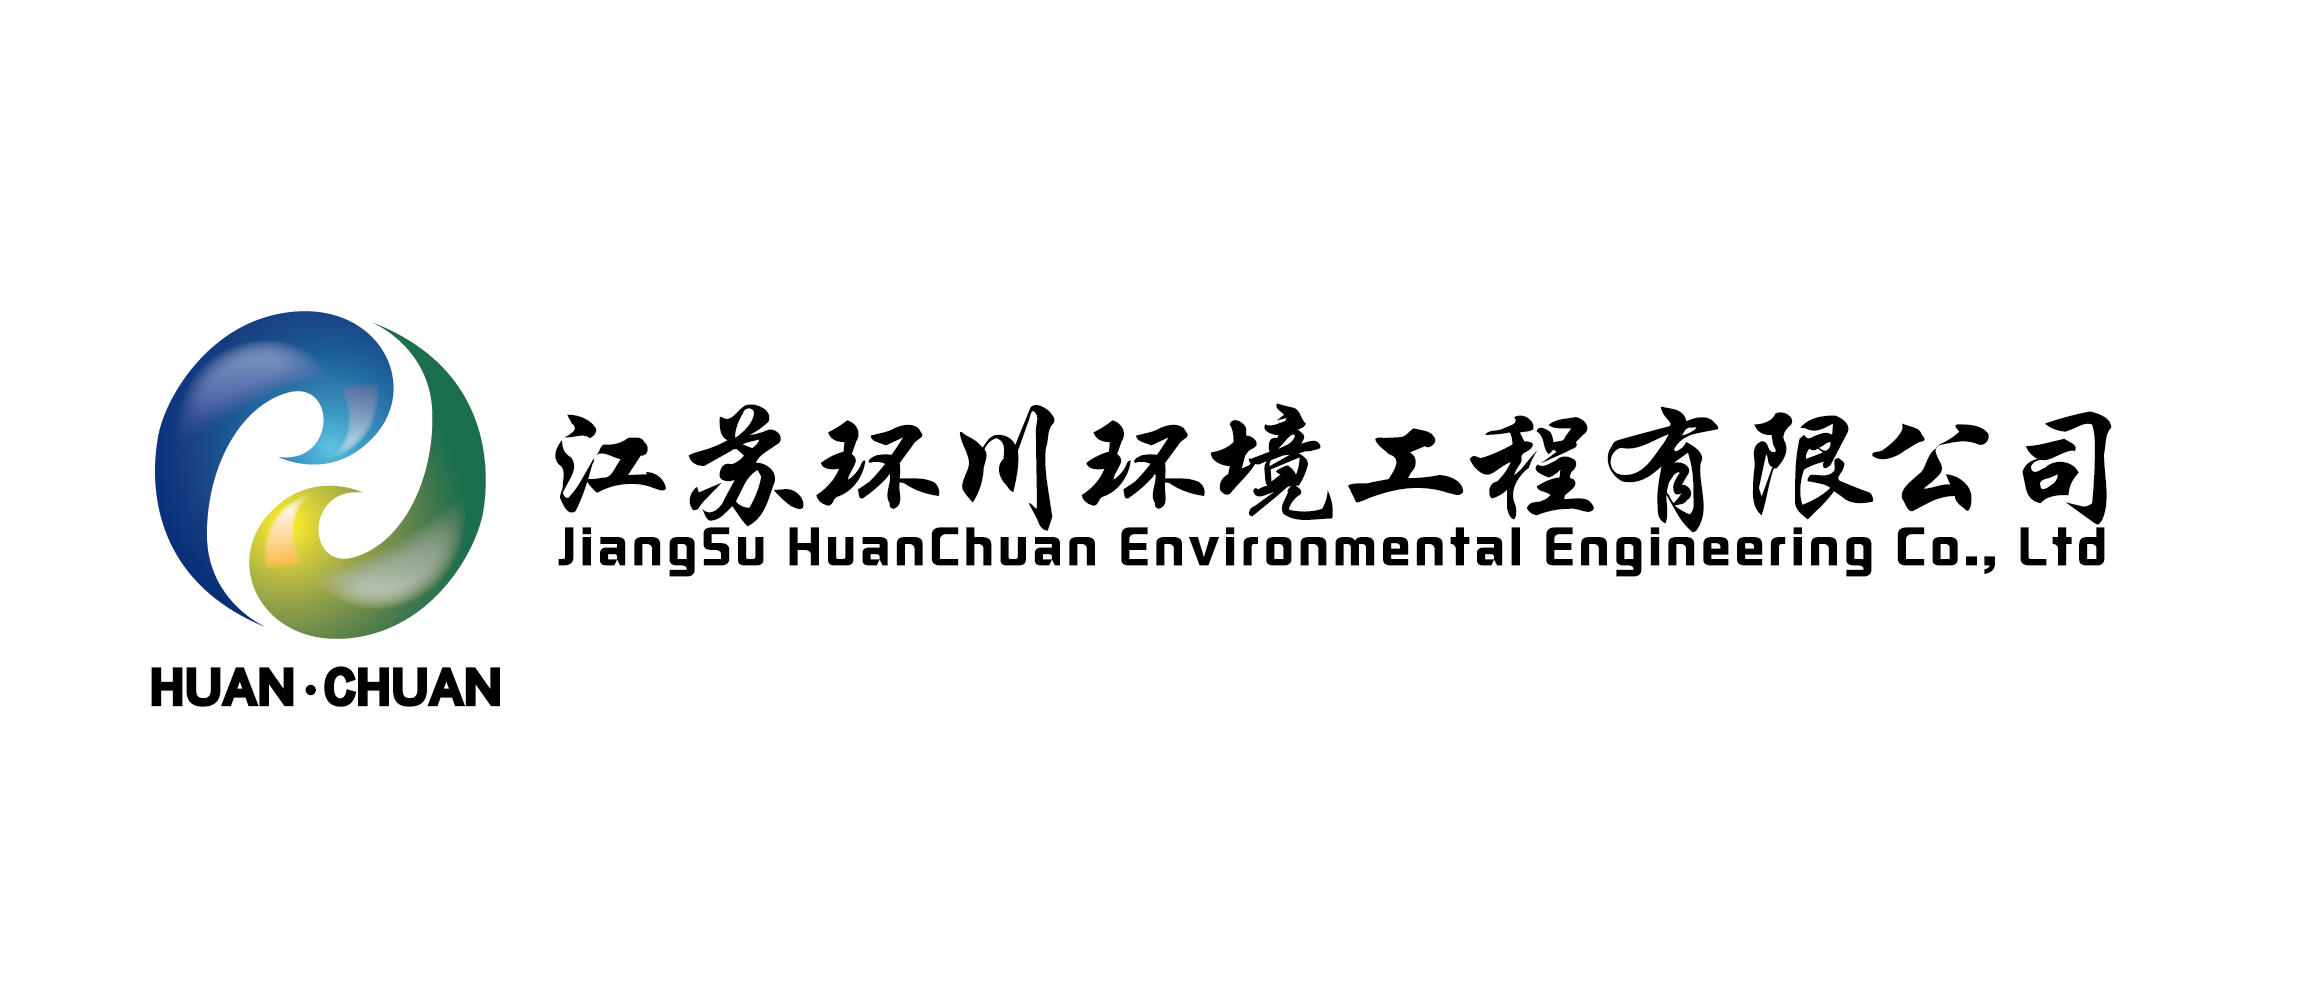 江苏环川环境工程有限公司